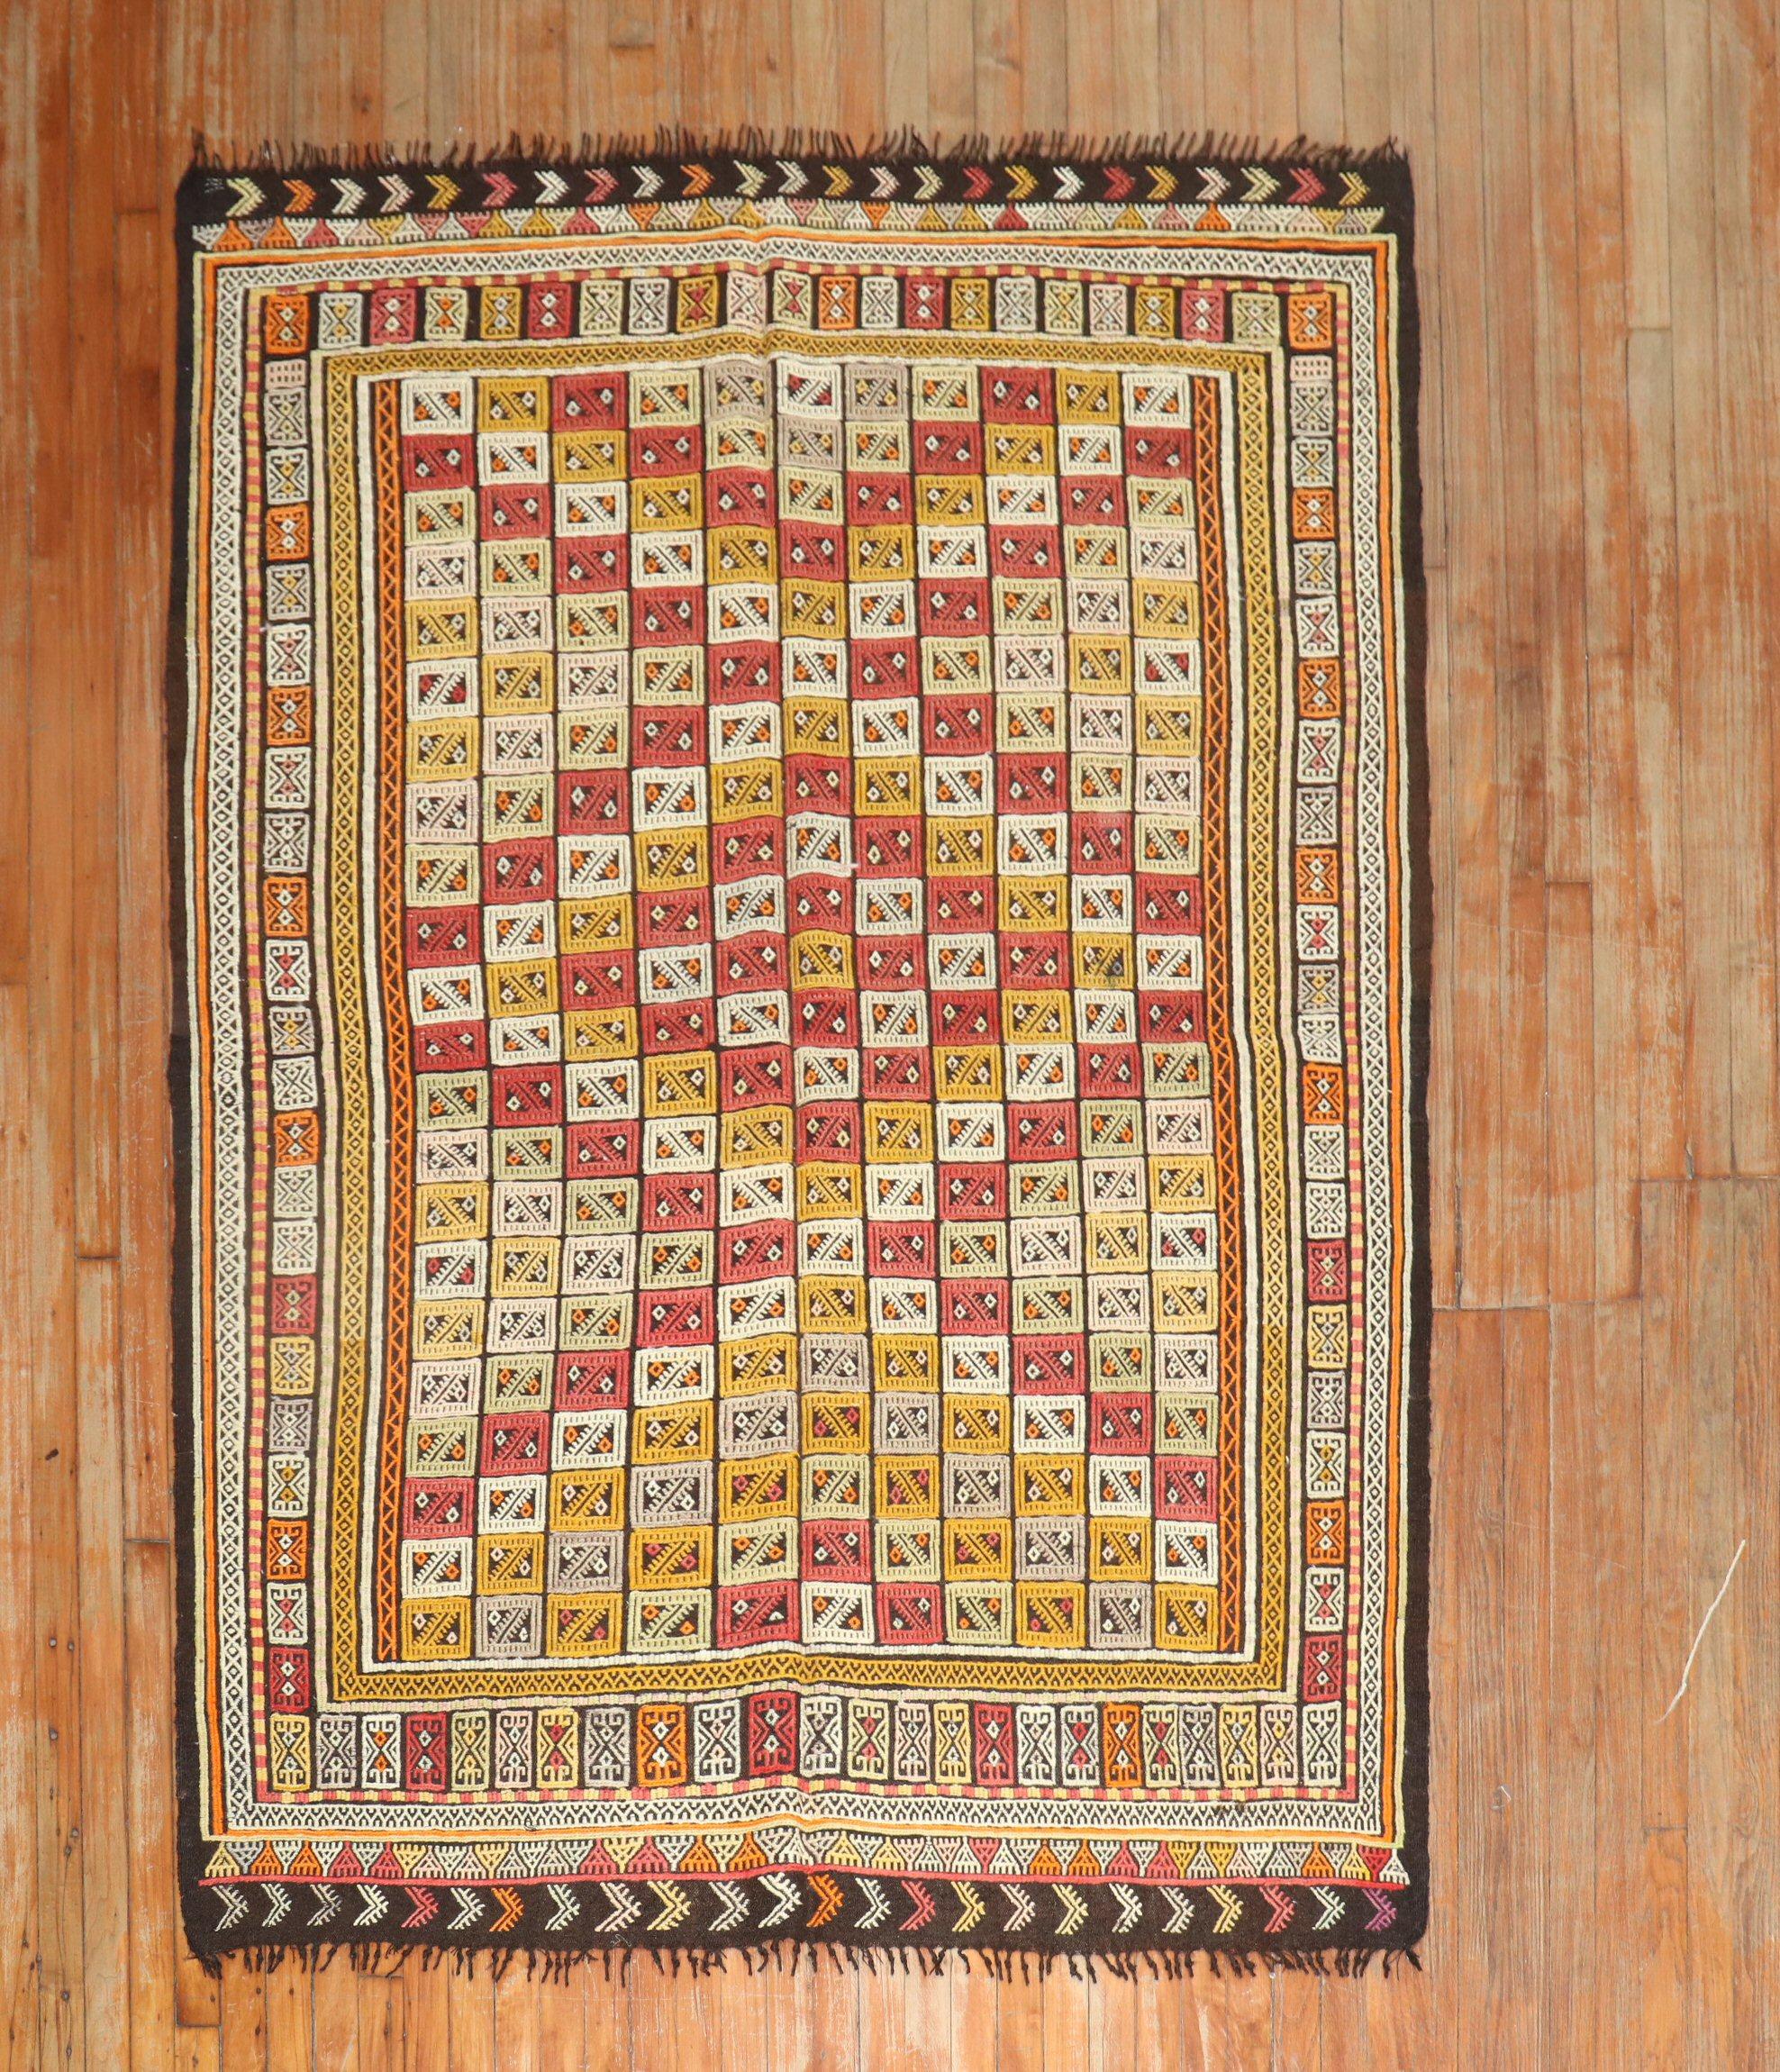 Mid-20th Century Turkish Geometric Jajim flatweave textile rug.

Measures: 5'2'' x 7'2''